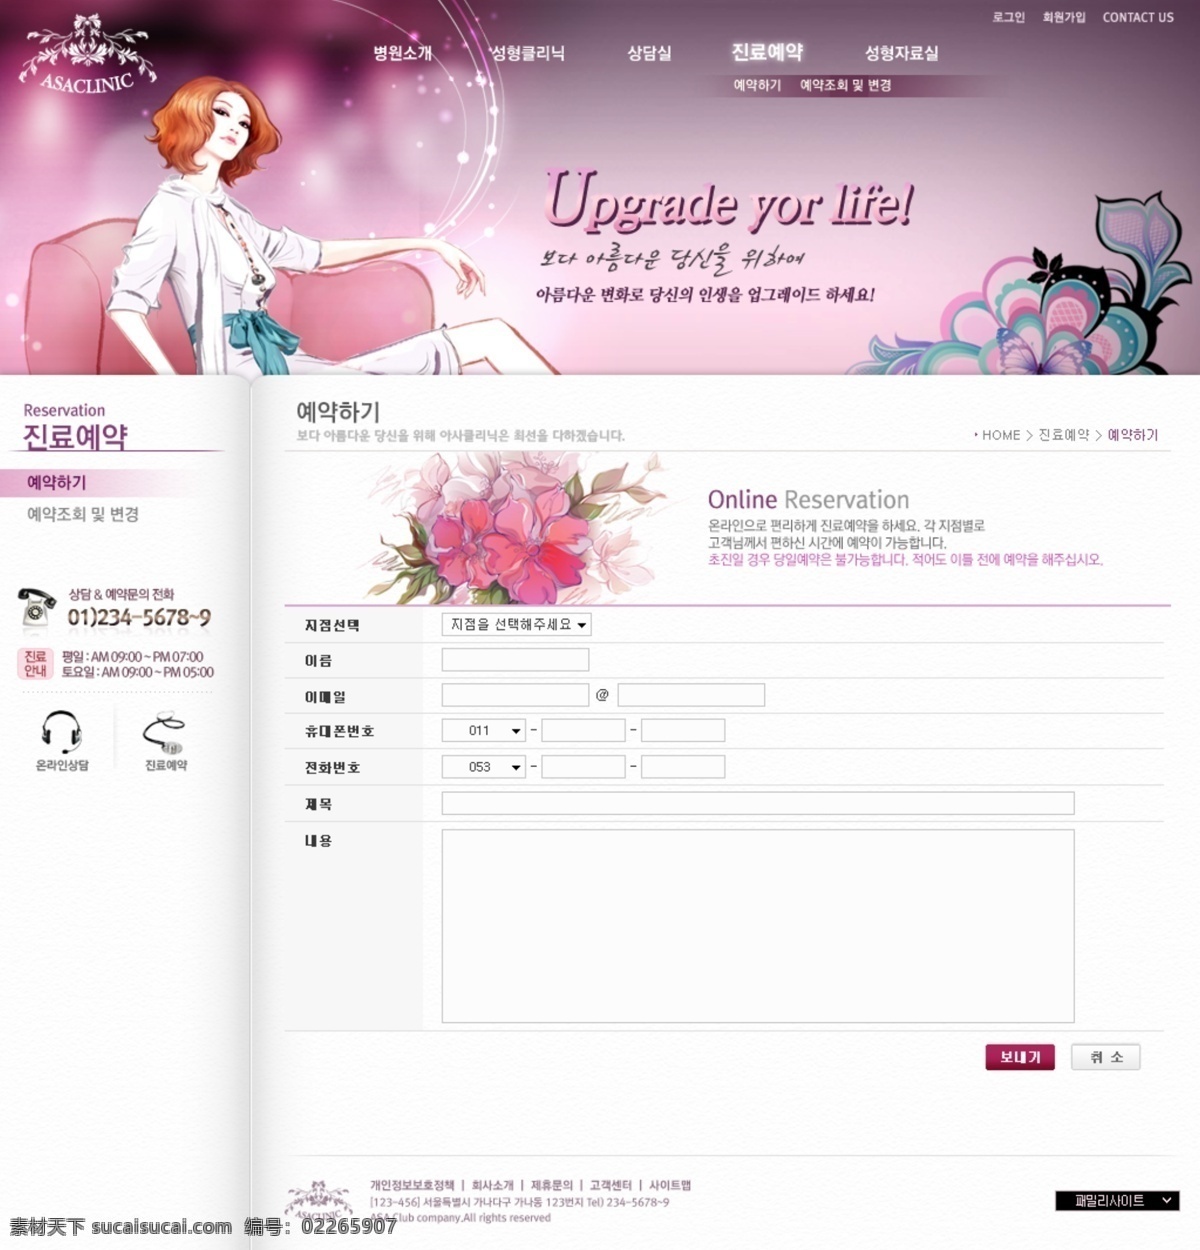 护肤 化妆 美容 网页模板 网站内页设计 源文件 美容化妆 网站 模板 模板下载 行业 宣传网站 类 韩文模板